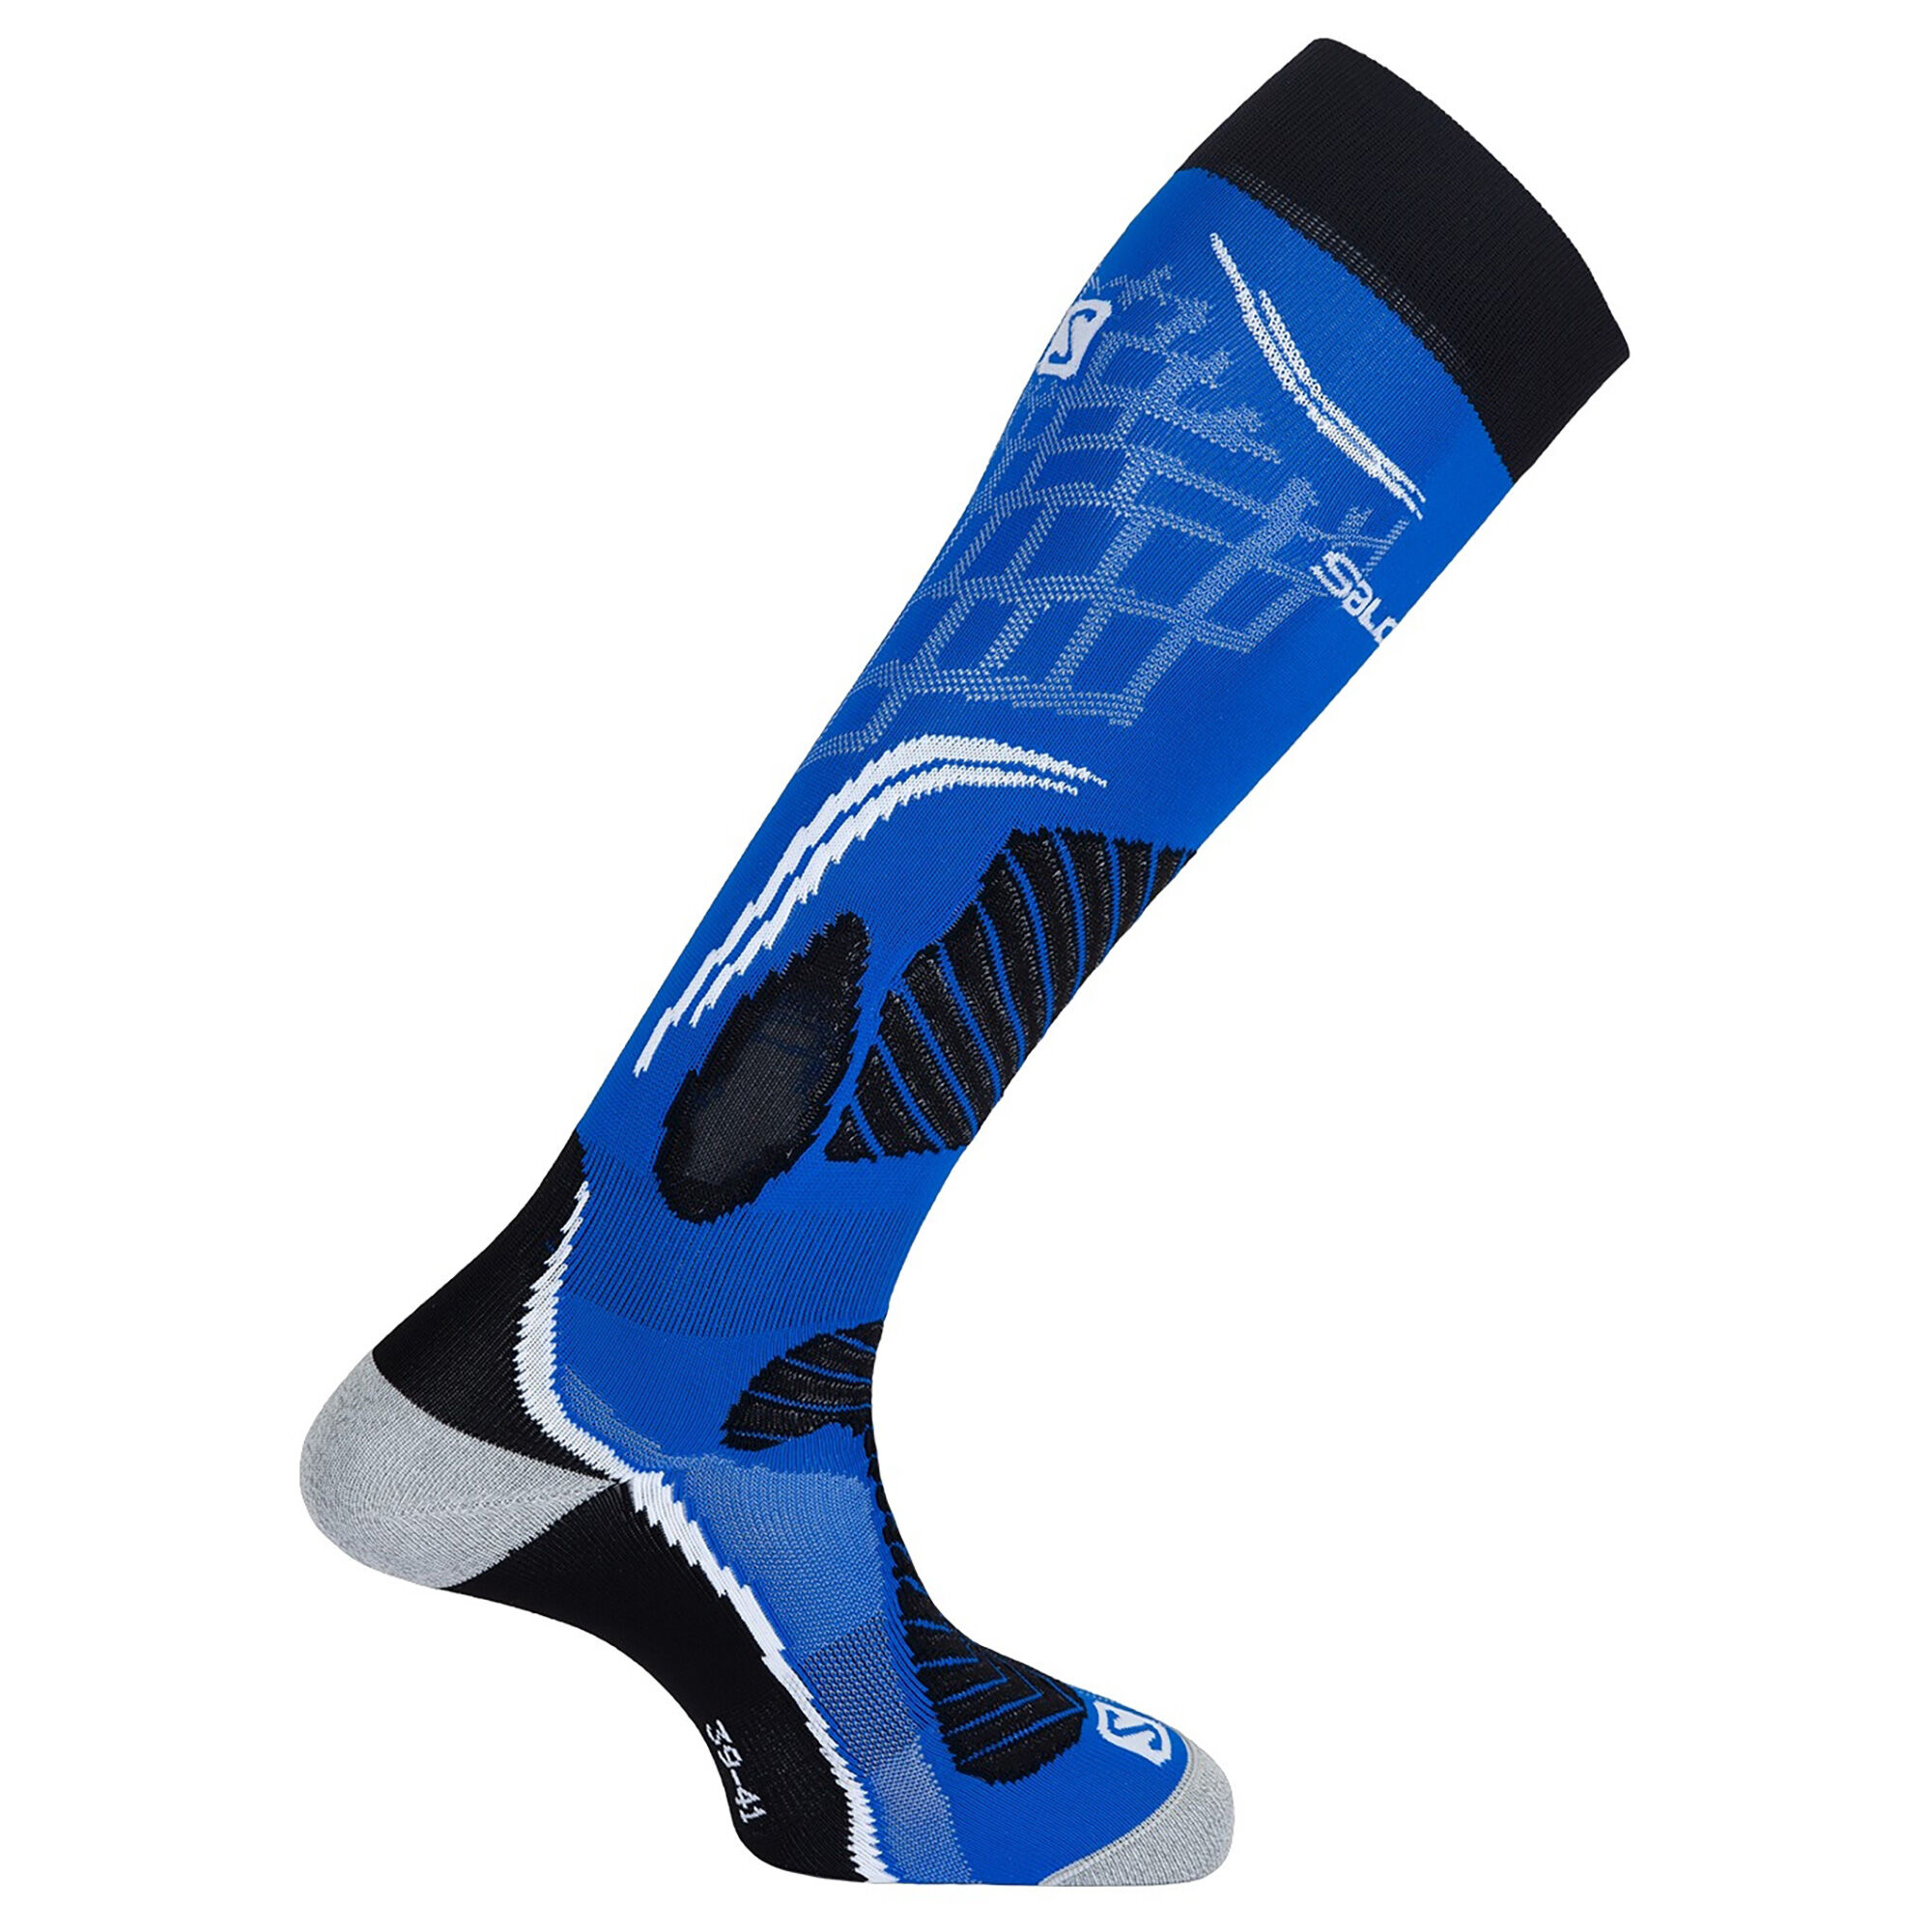 Salomon X Pro - Ski socks